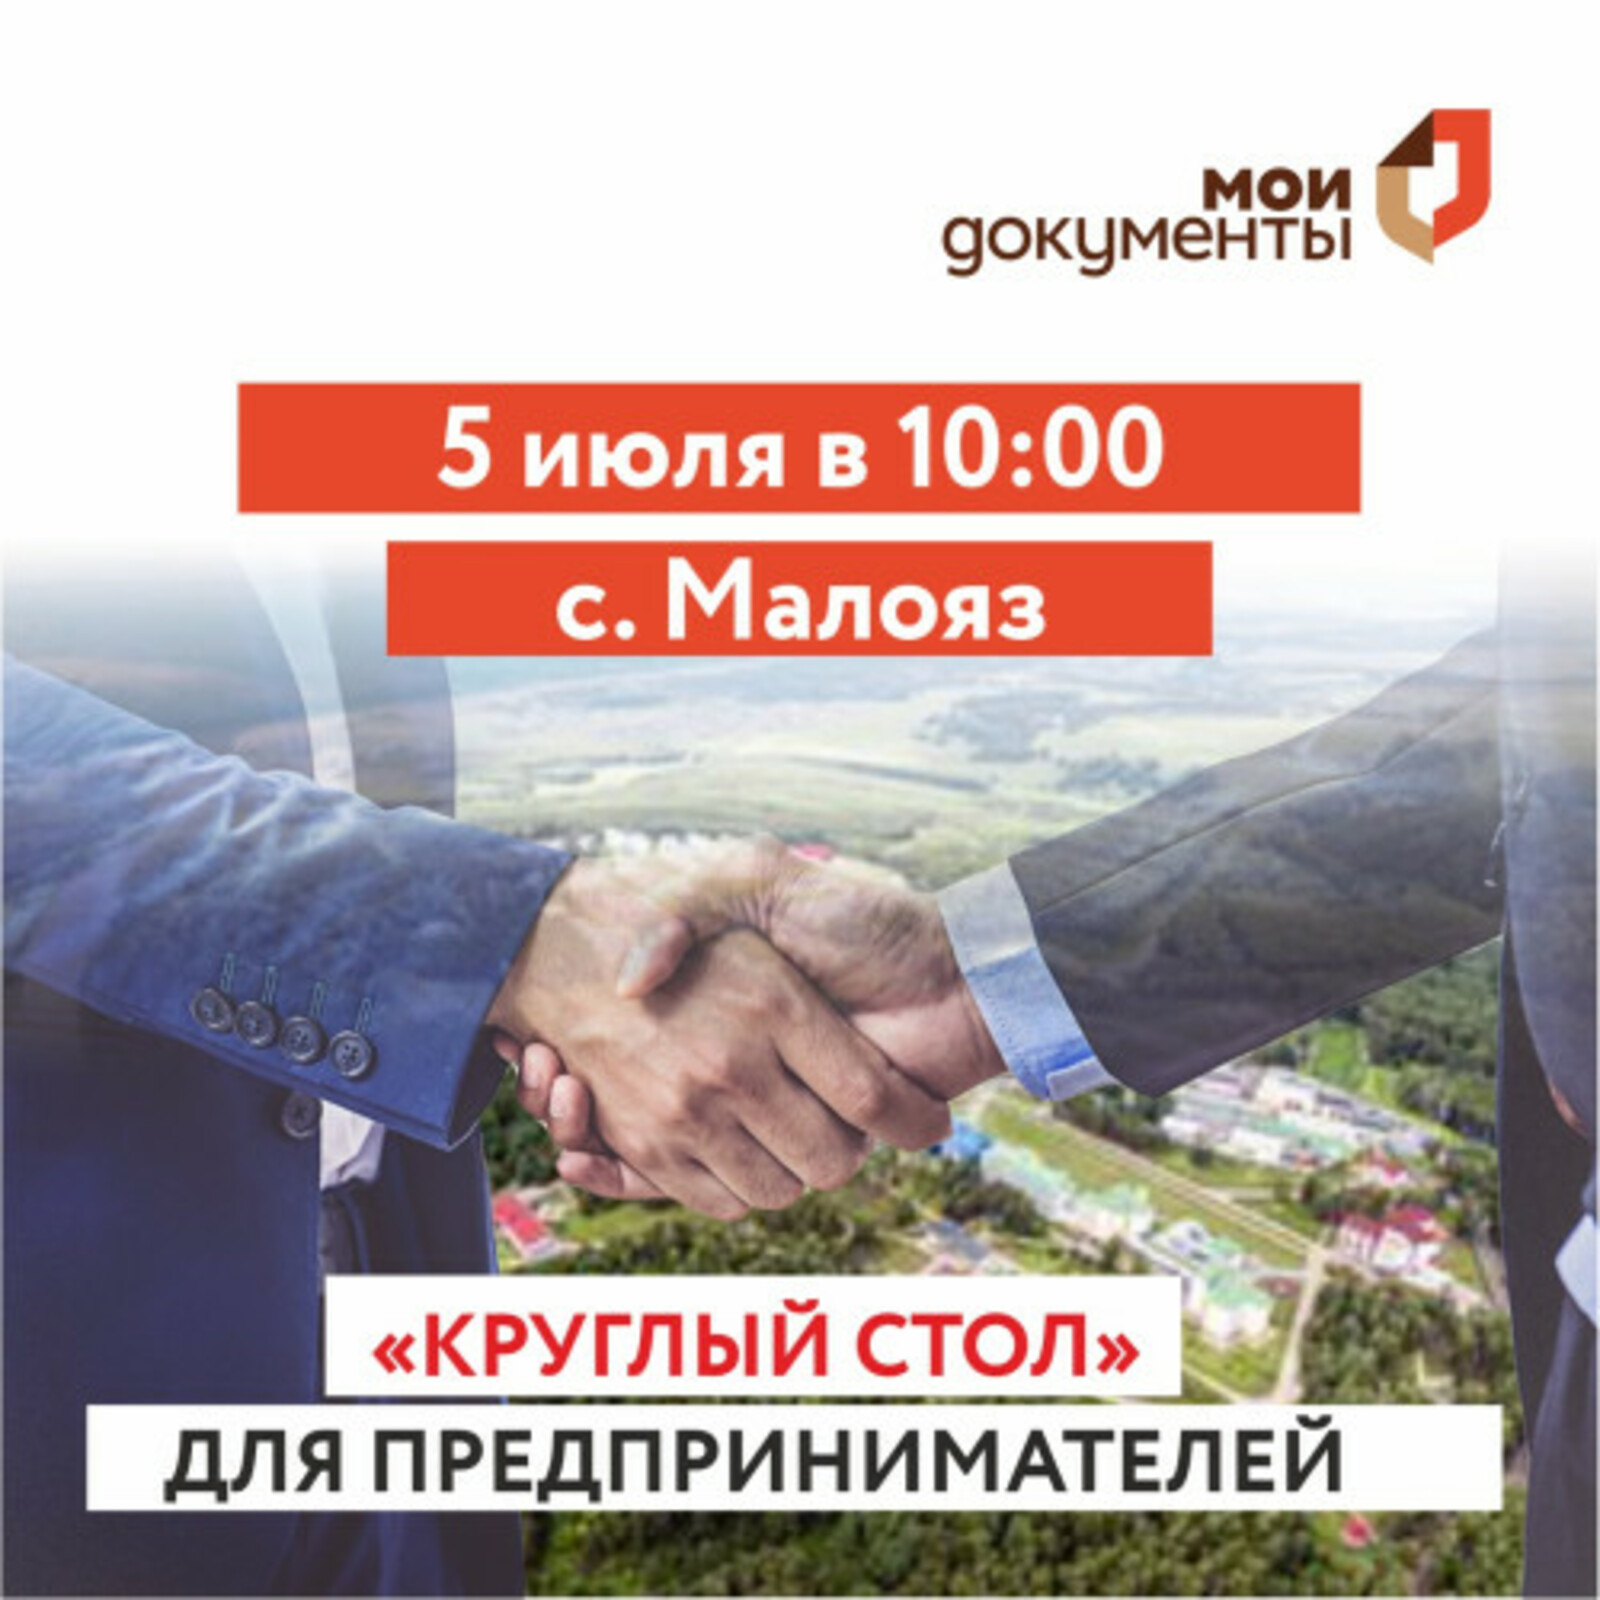 МФЦ Башкортостана проведет «круглый стол» для предпринимателей Салаватского района